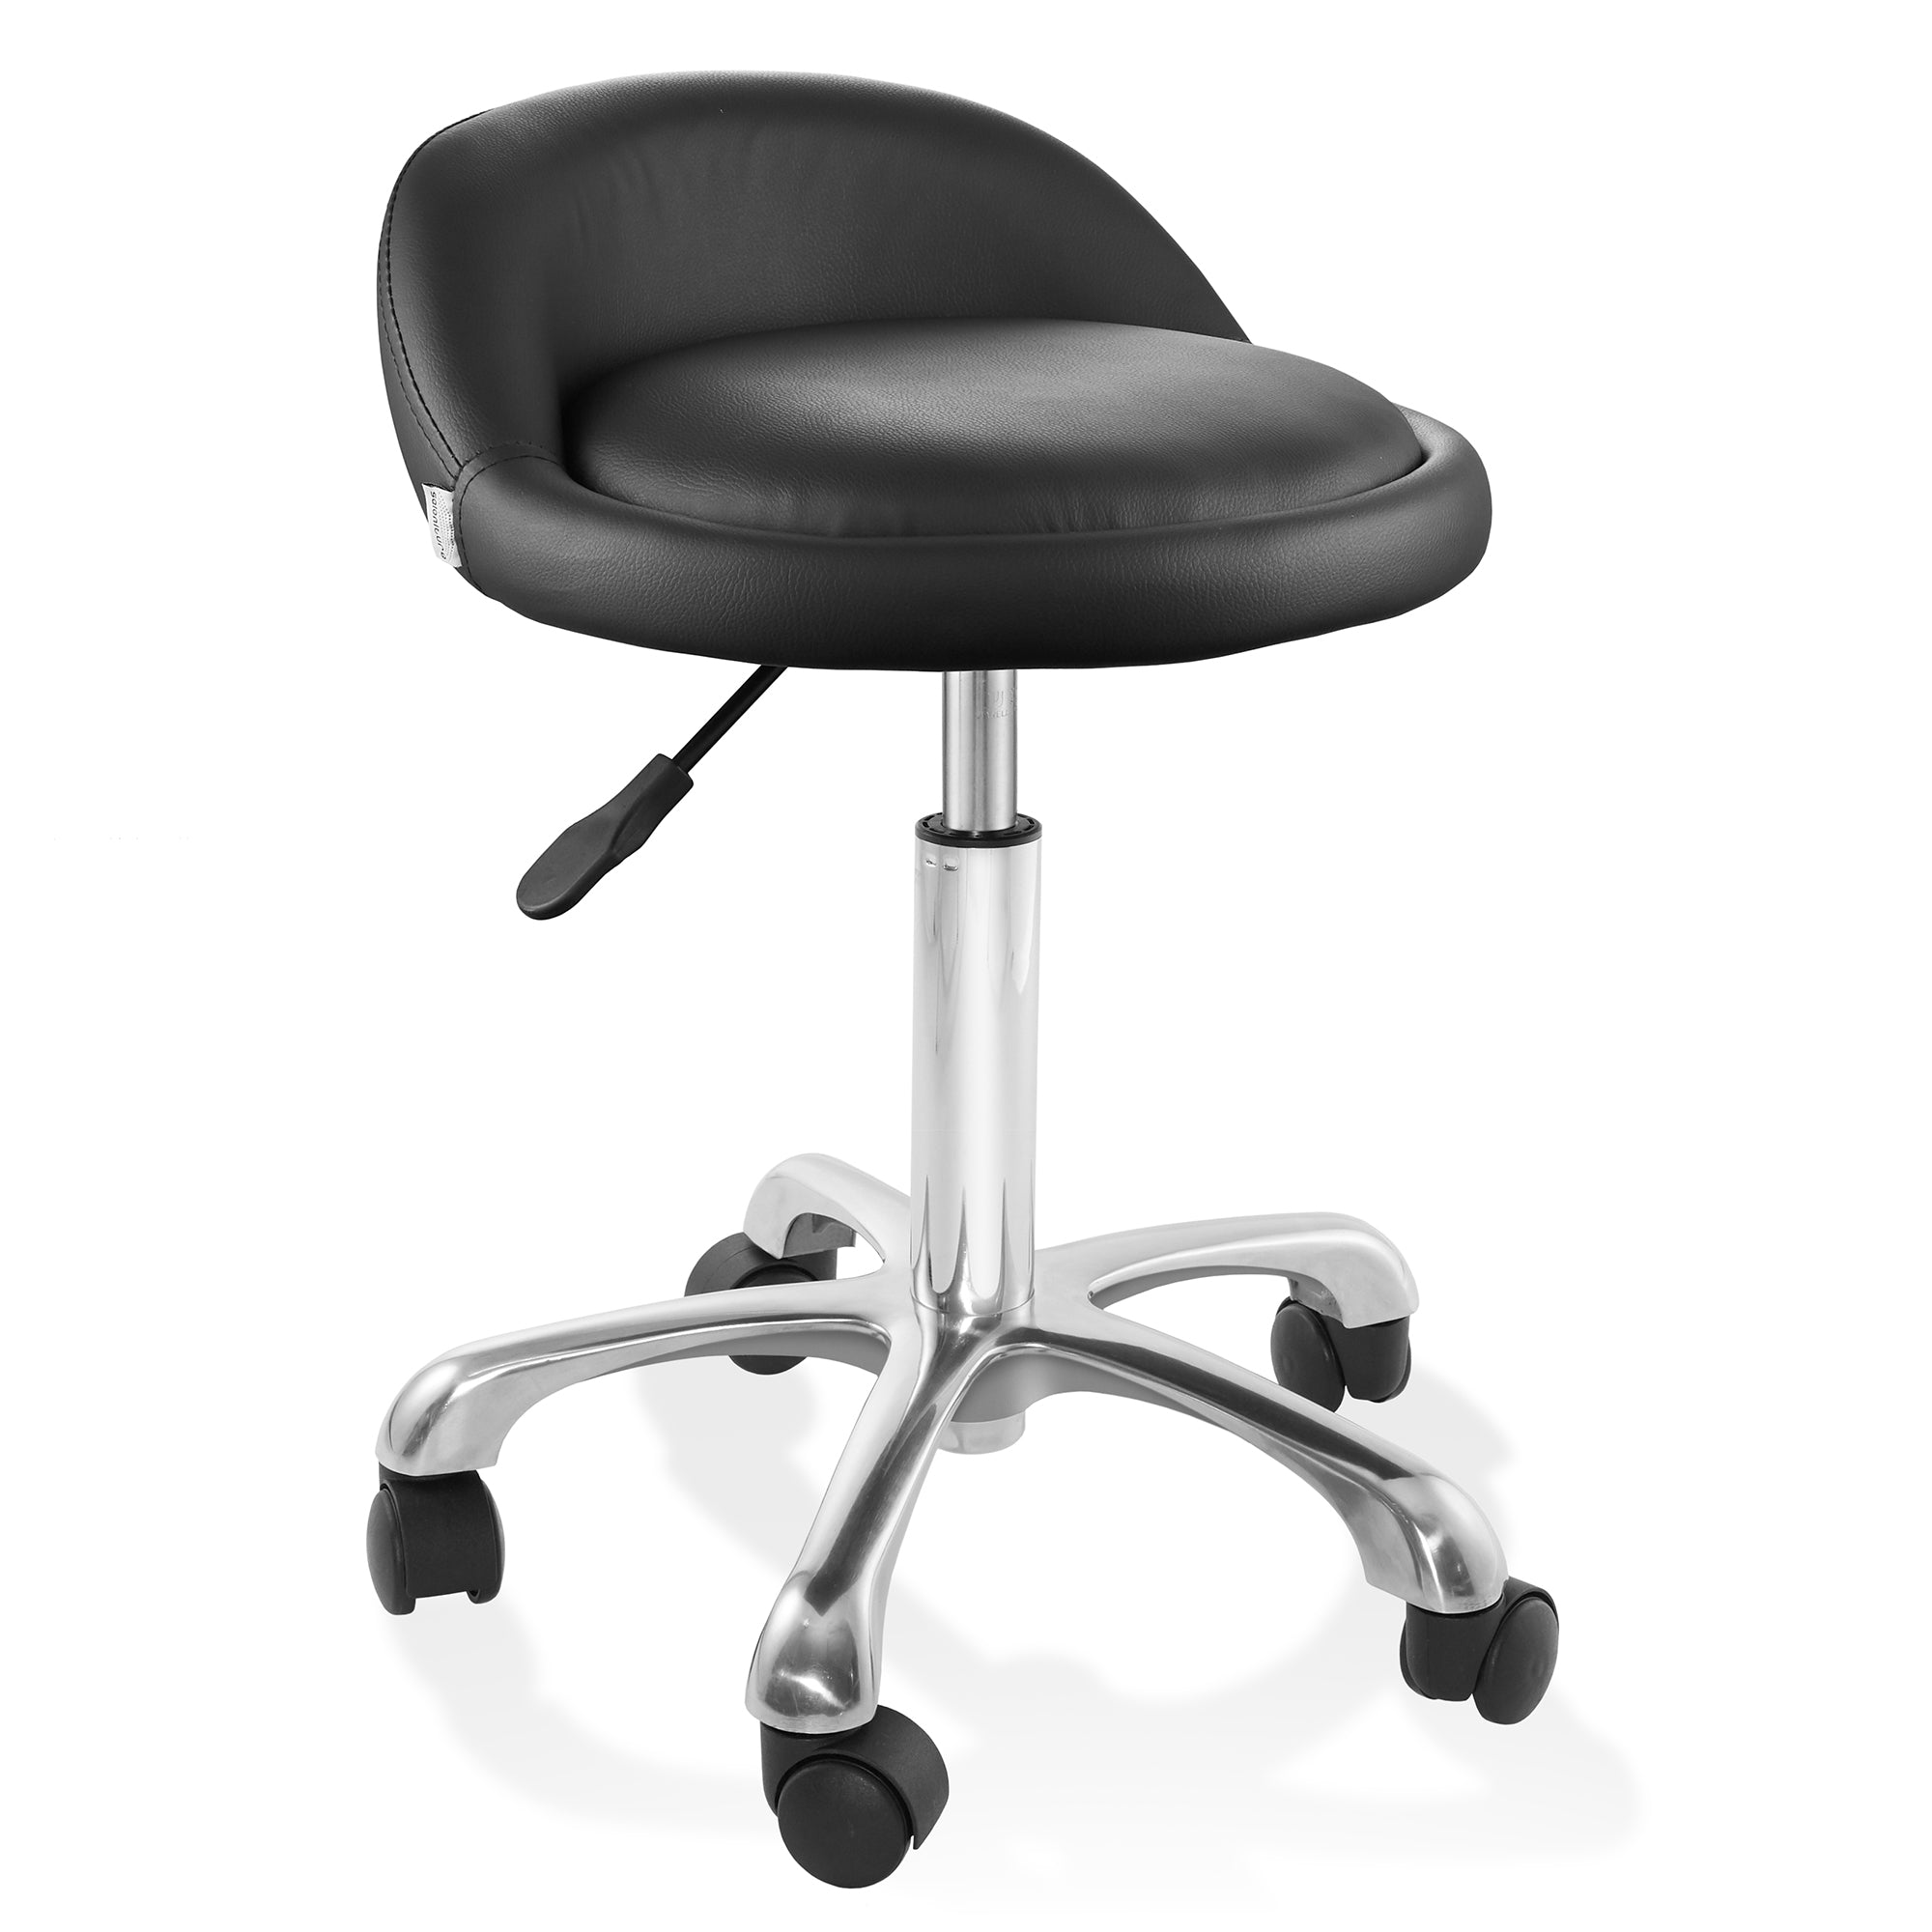 OPEN BOX - Adjustable Rolling Swivel Stool Salon Chair w/ Low Backrest - Black